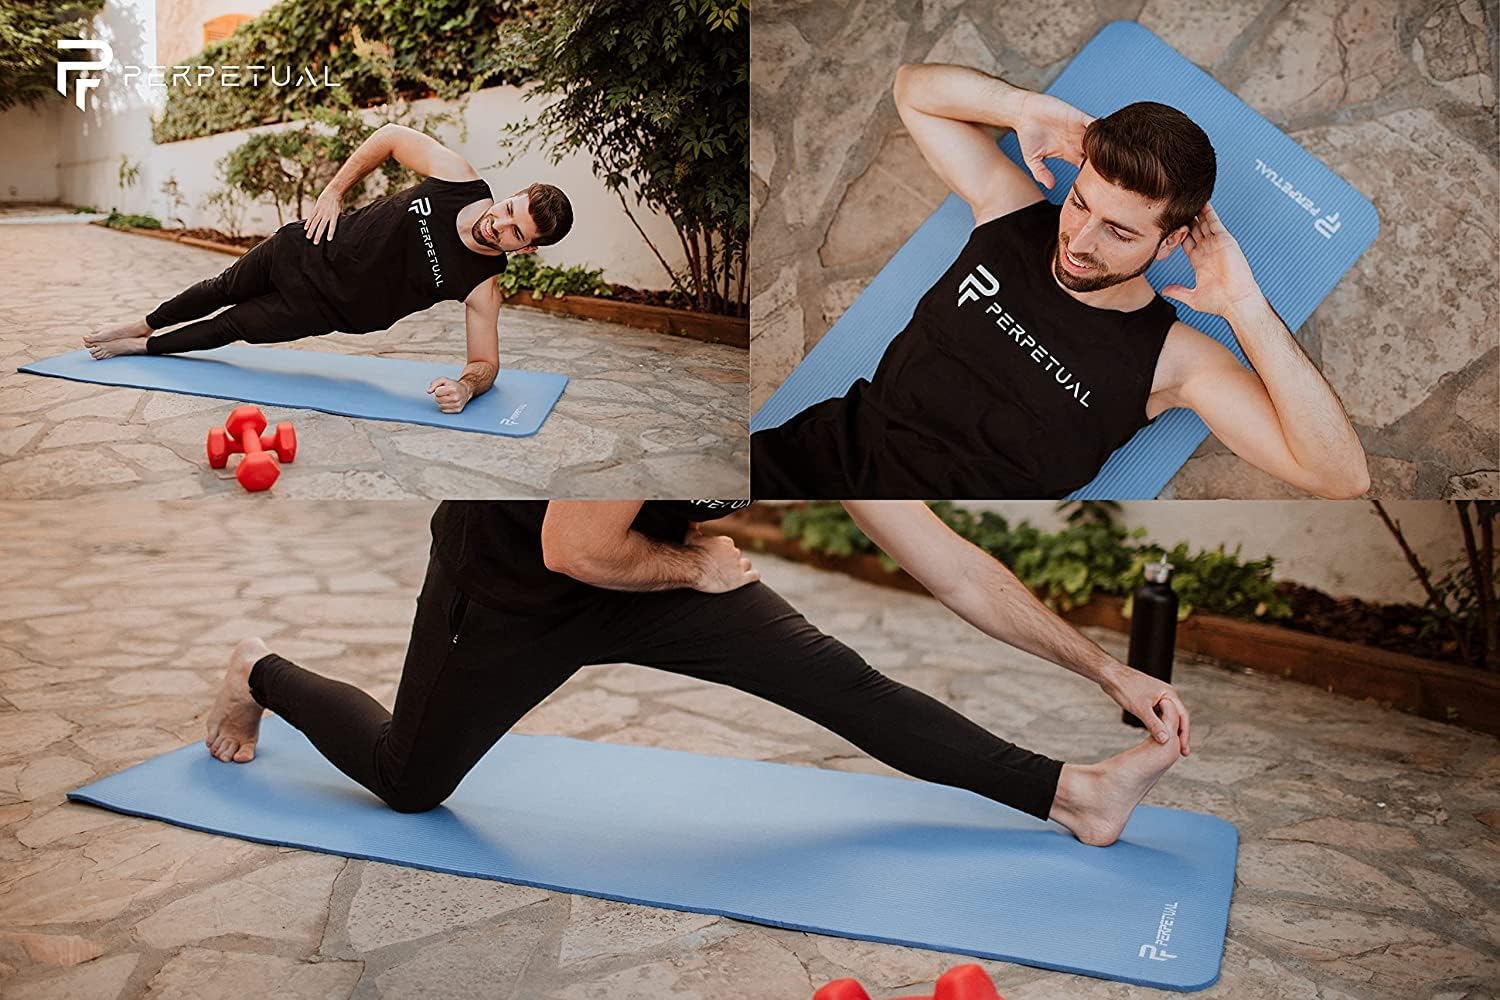 Kit Esterilla De Yoga Y Pilates Perpetual De 10mm Con Bolsa De Transporte Y Correa  MKP